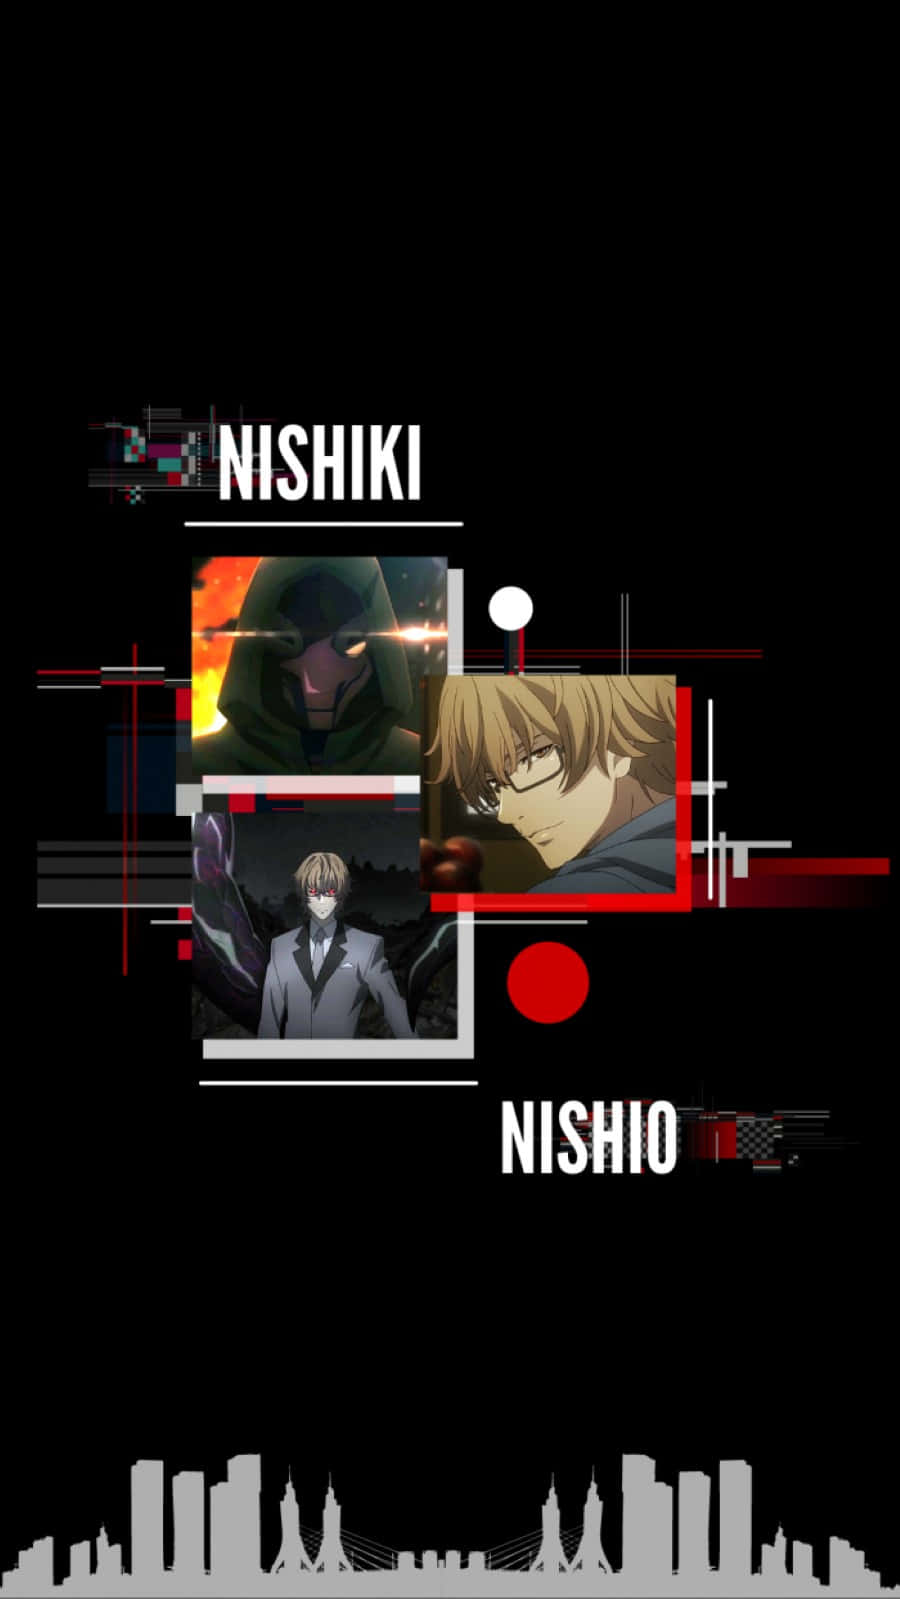 Nishikinishio Mostrando Su Destreza Como Ghoul En Una Ilustración Impresionante. Fondo de pantalla